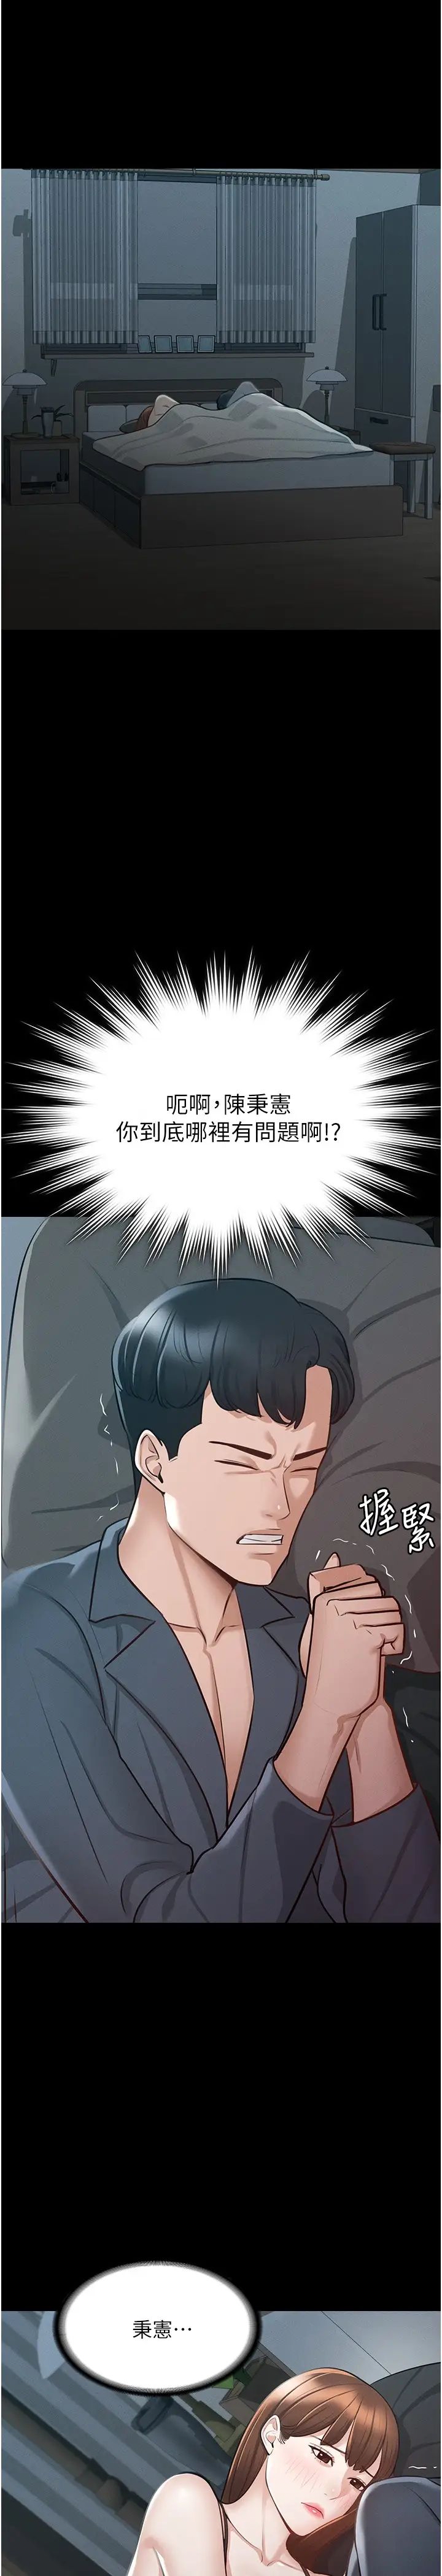 韩国污漫画 超級公務員 第9话 欲火焚身的千晴 29